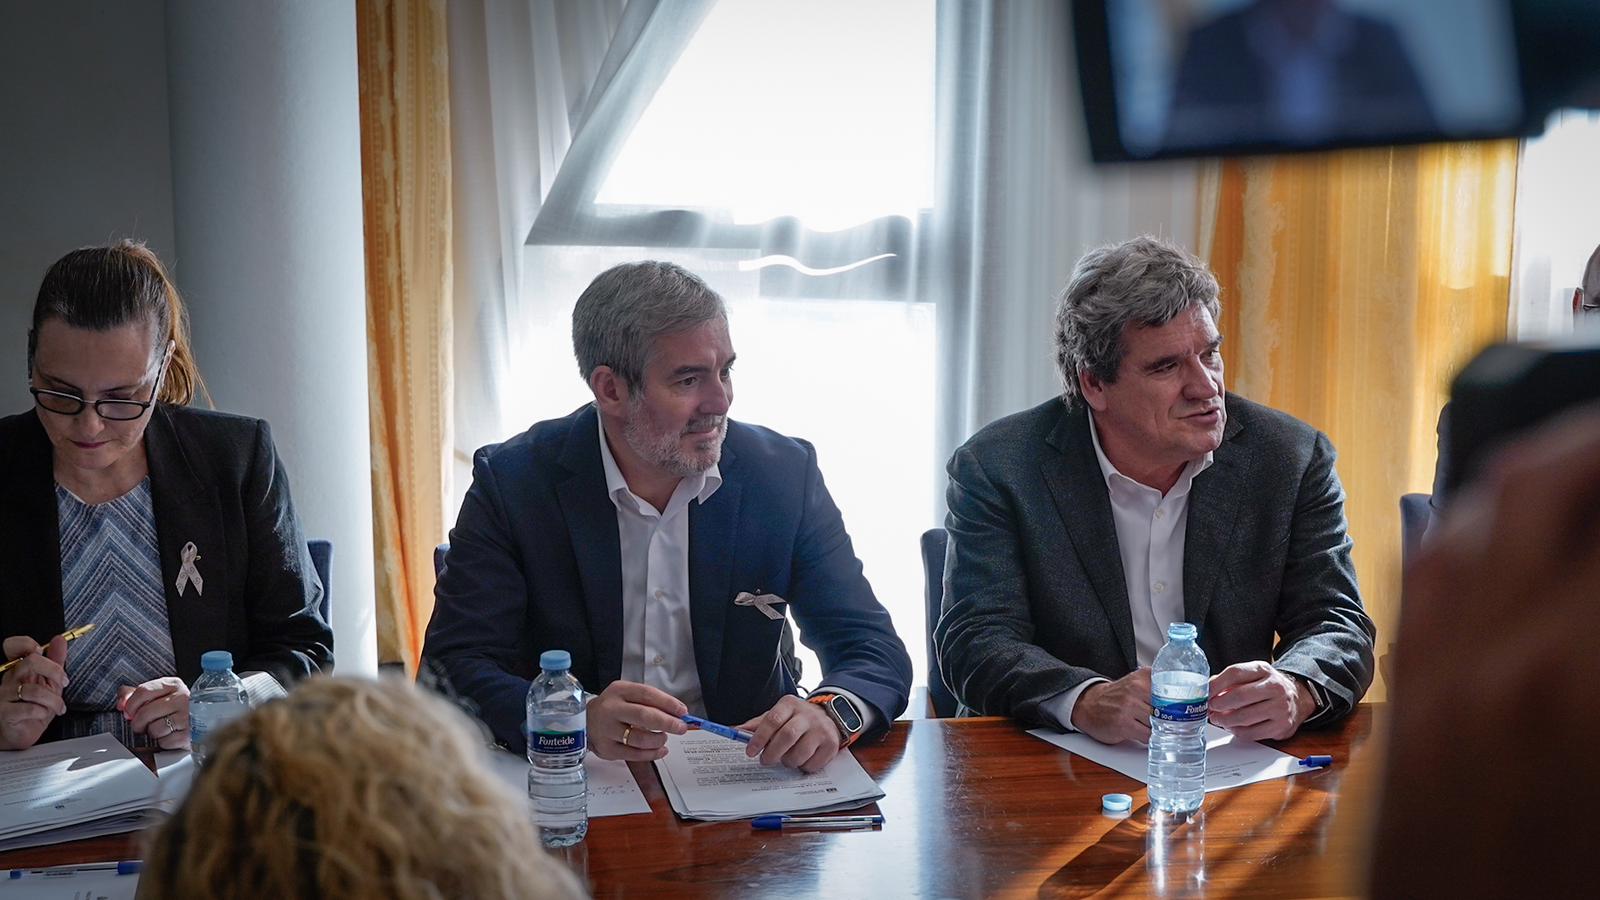 El ex ministro de Migraciones, José Luis Escrivá, durante una reunión en una imagen de archivo. Foto: Gobierno de Canarias.